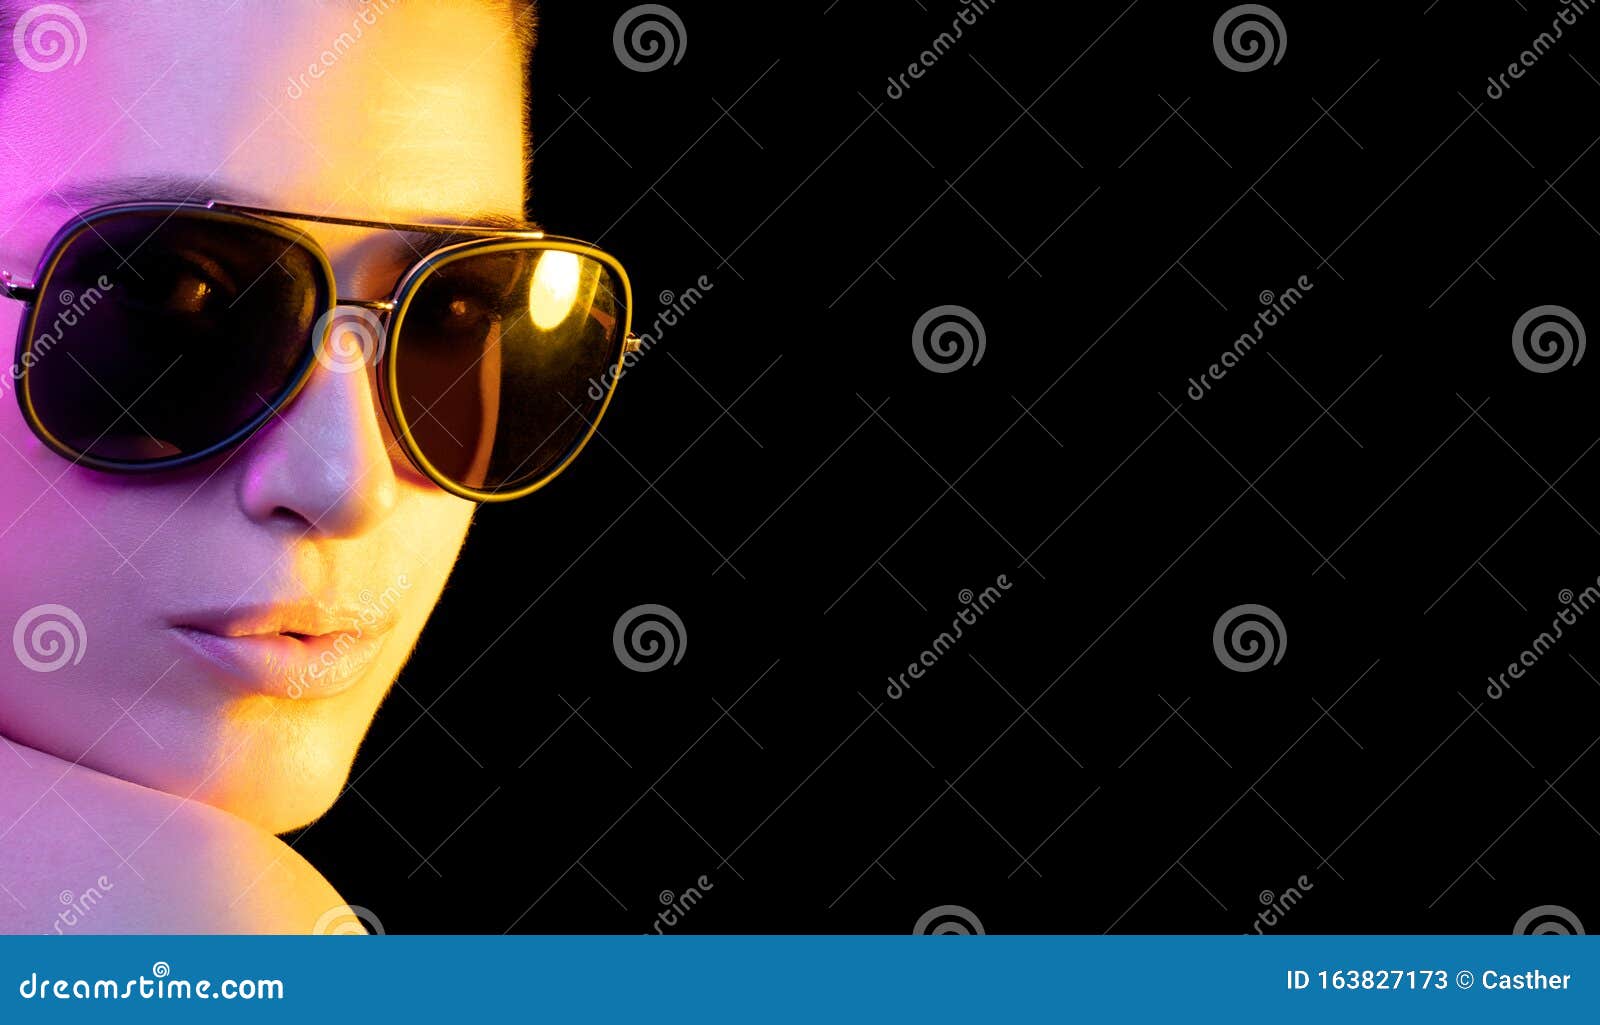 https://thumbs.dreamstime.com/z/mujer-muy-joven-con-grandes-gafas-de-sol-en-color-p%C3%BArpura-y-dorado-cara-hermosa-anteojos-modelo-chica-lentes-brillantes-suave-163827173.jpg